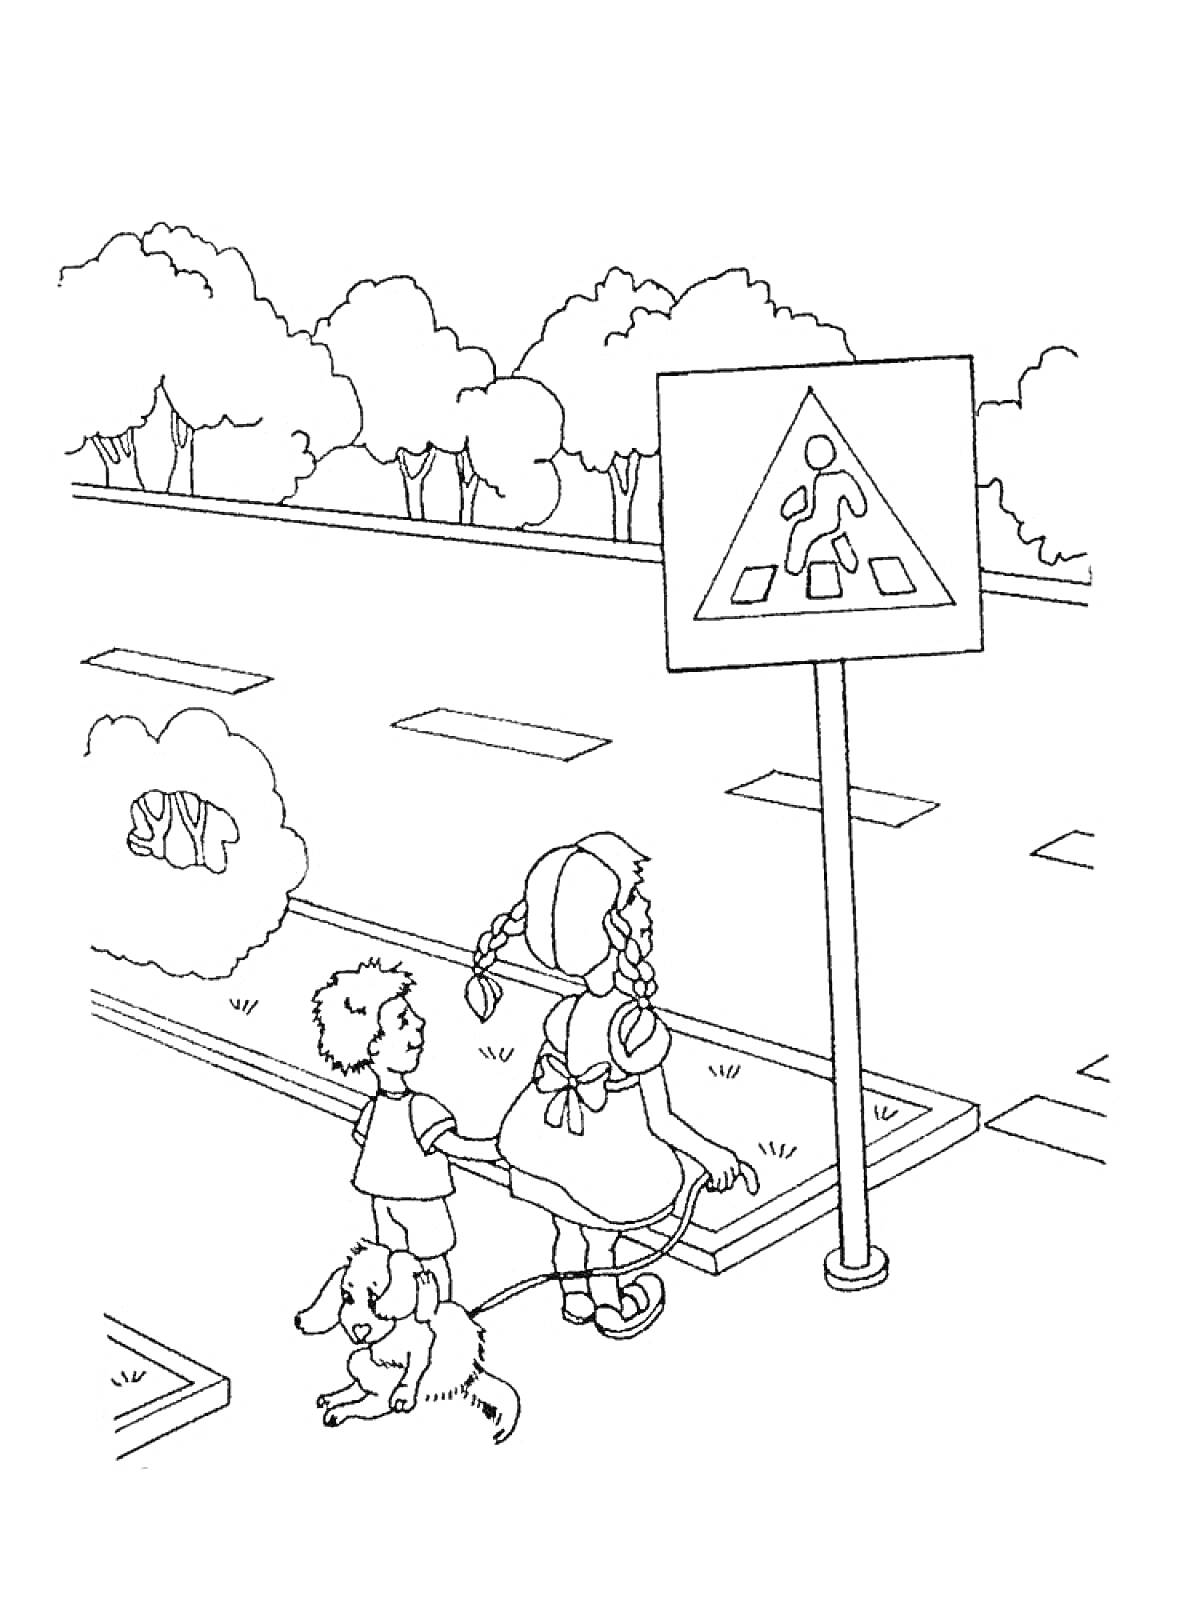 Раскраска Дети на пешеходном переходе с дорожным знаком у дороги, рядом с дорогой дерево и лежащая собака